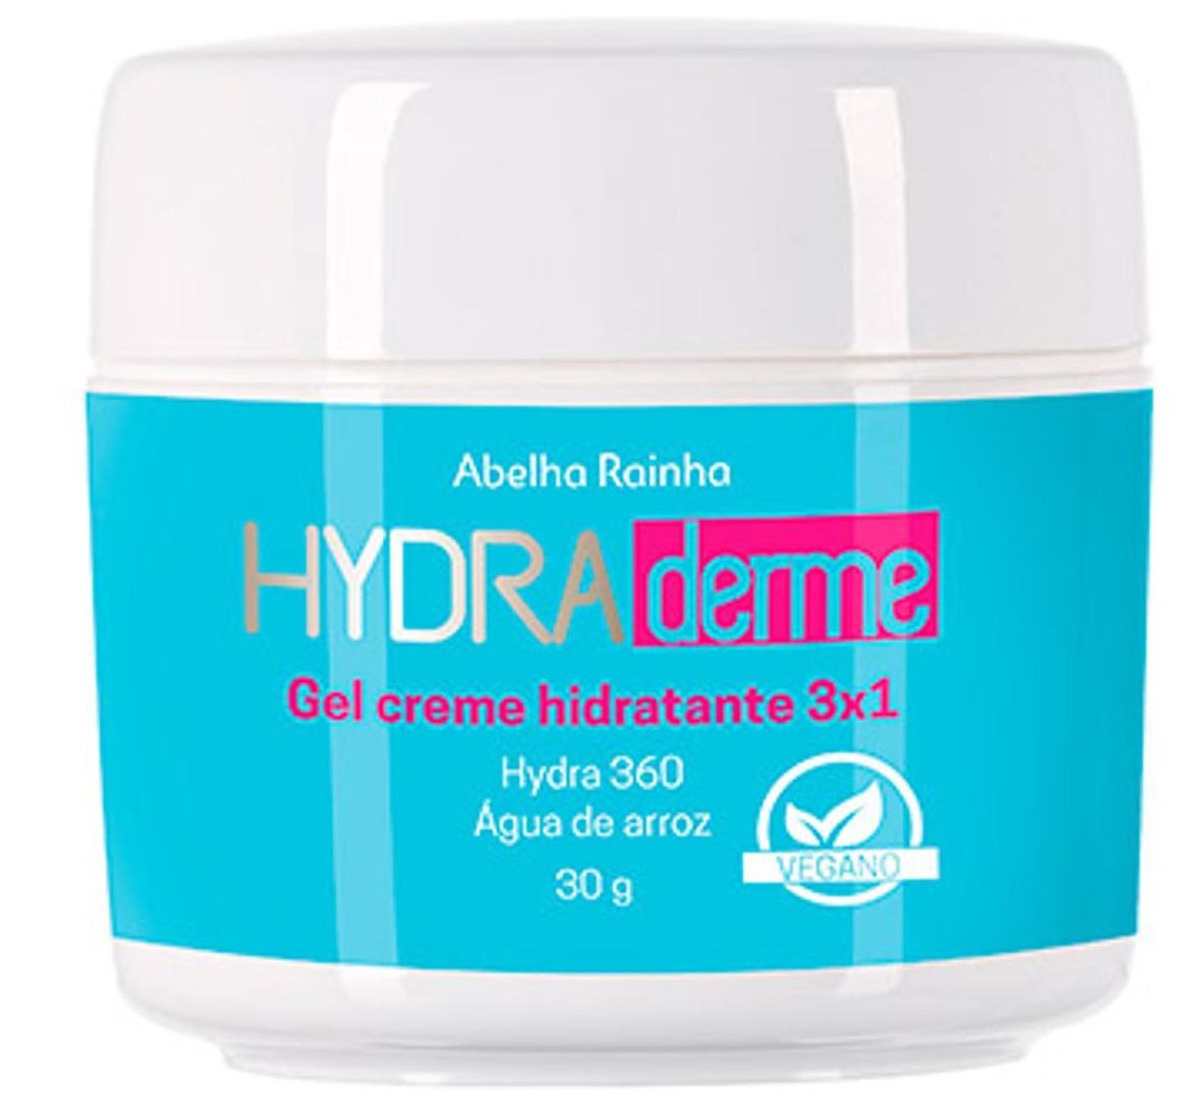 Abelha Rainha Hydraderme Gel Creme Hidratante 3 Em 1